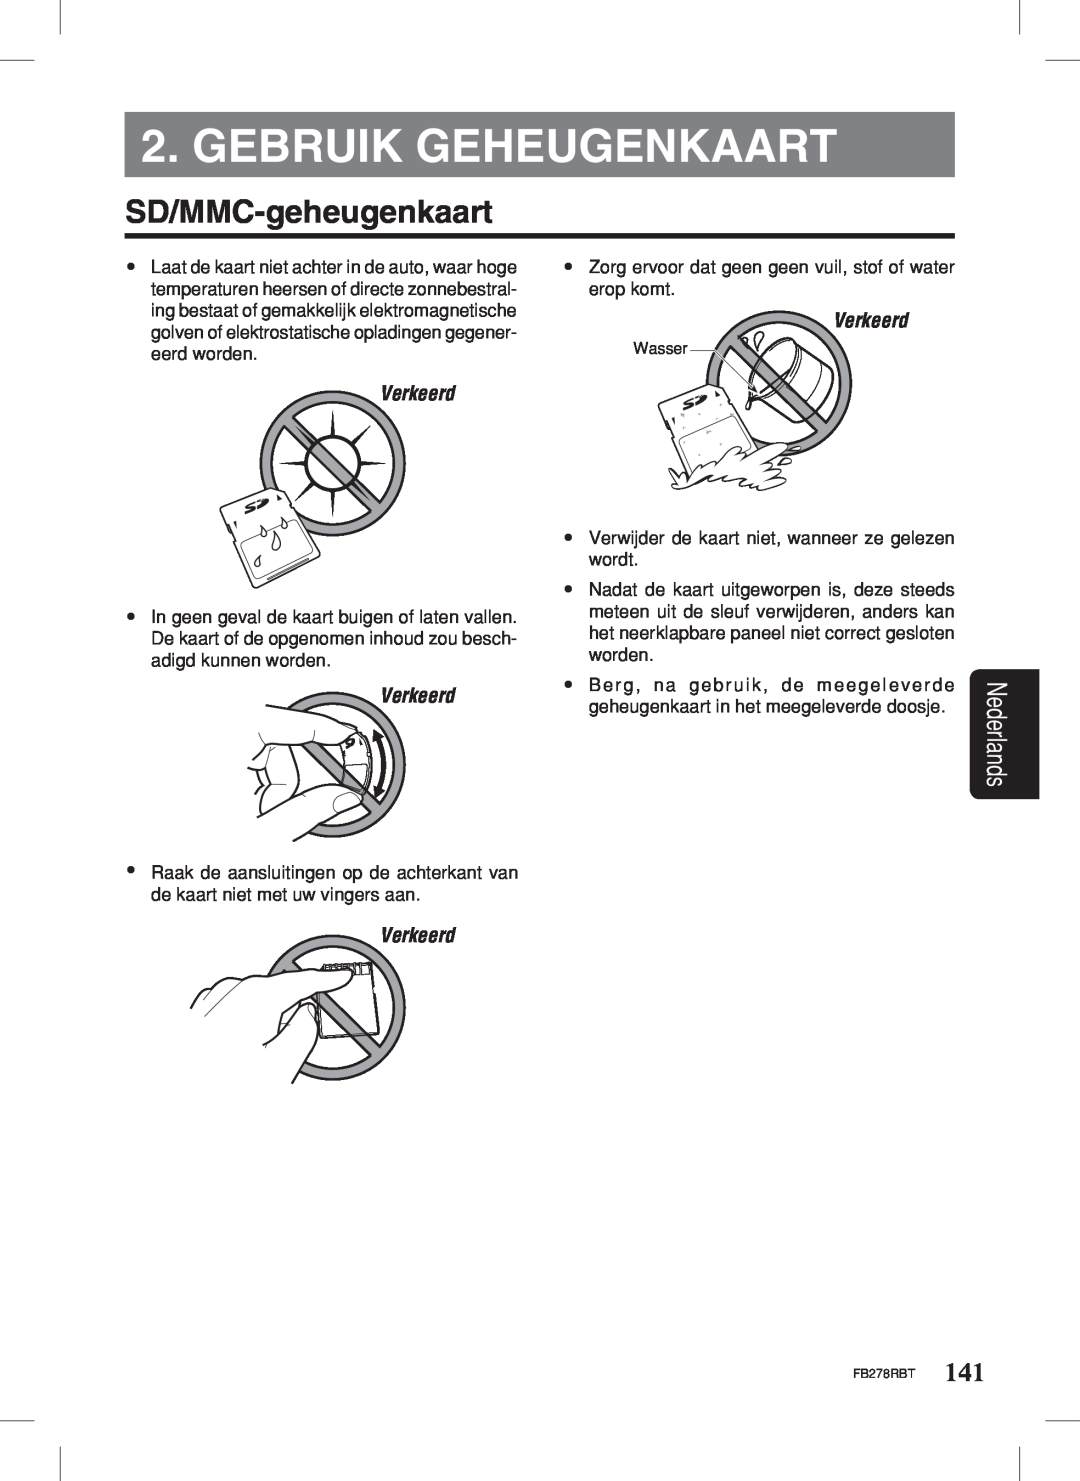 Clarion FB278RBT manual Gebruik Geheugenkaart, SD/MMC-geheugenkaart, Verkeerd, Nederlands 